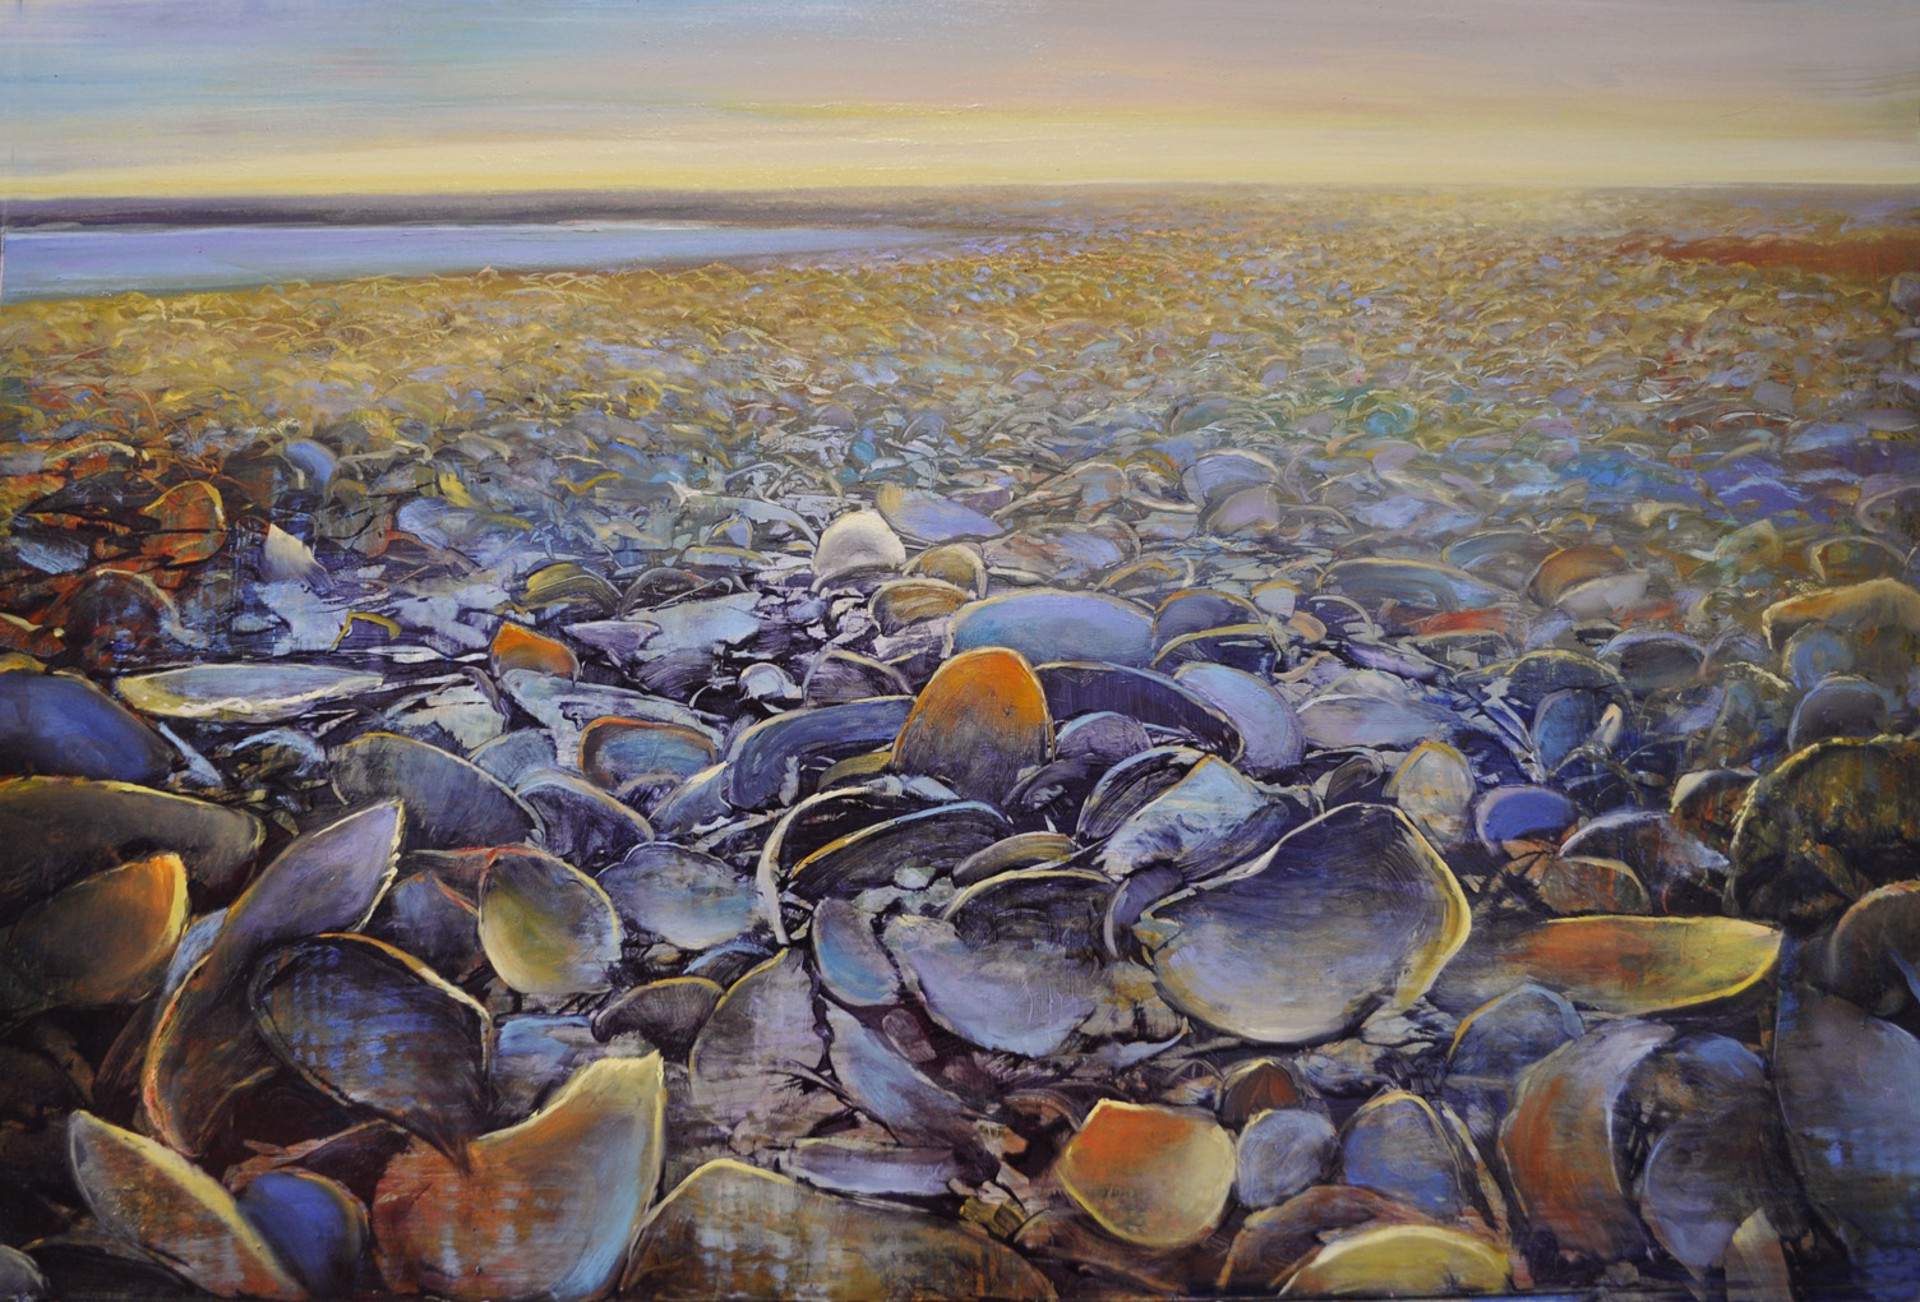 Seashell Samba by David Dunlop